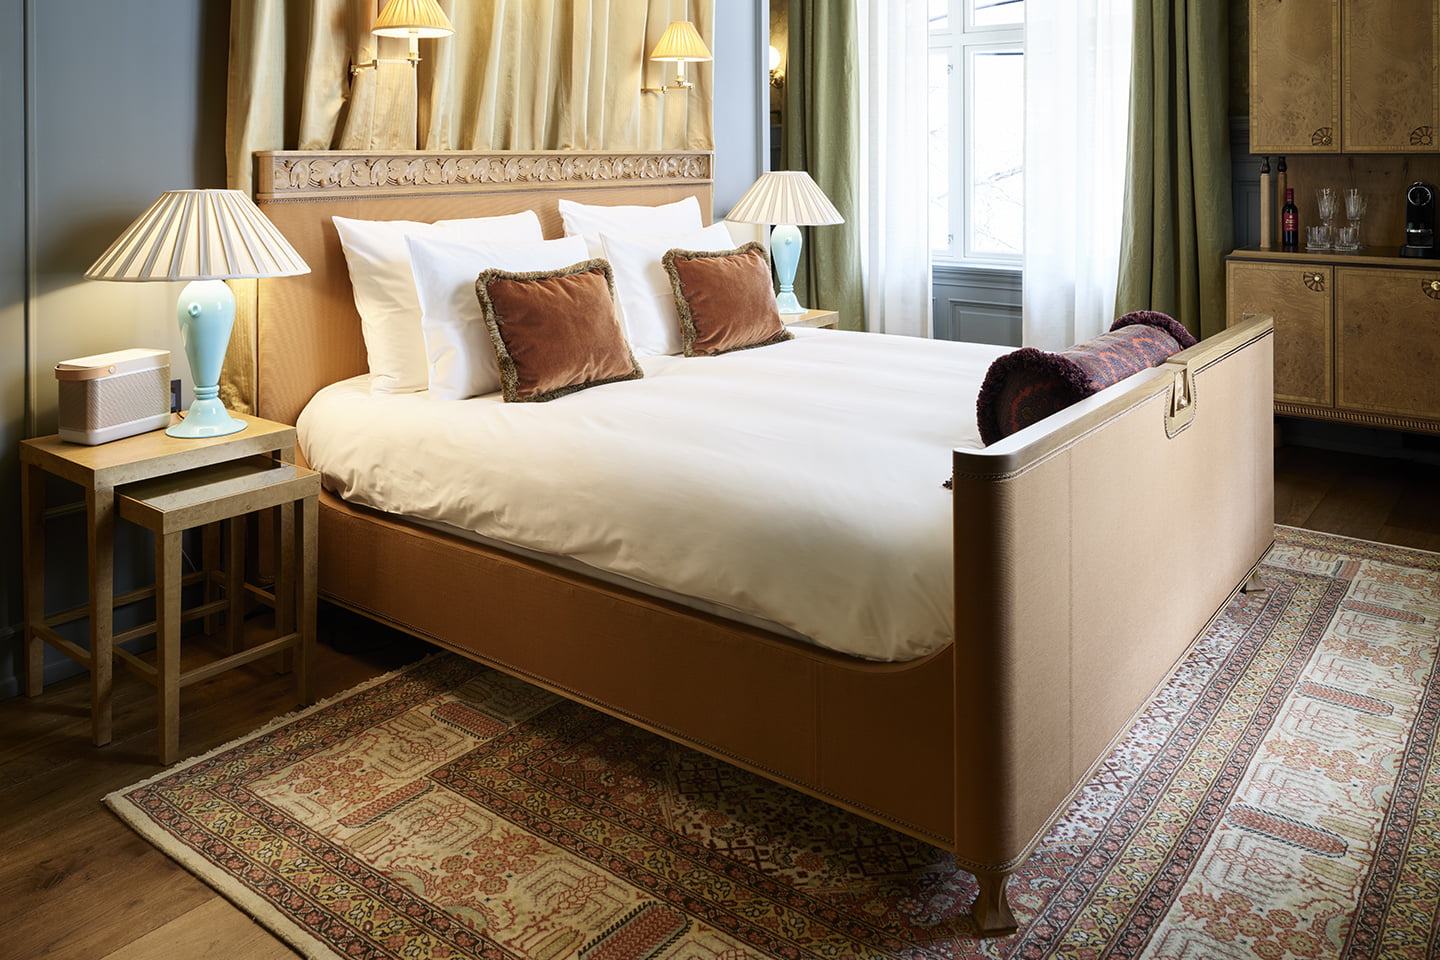 Bedroom in Villa Icognito with Svane mattress